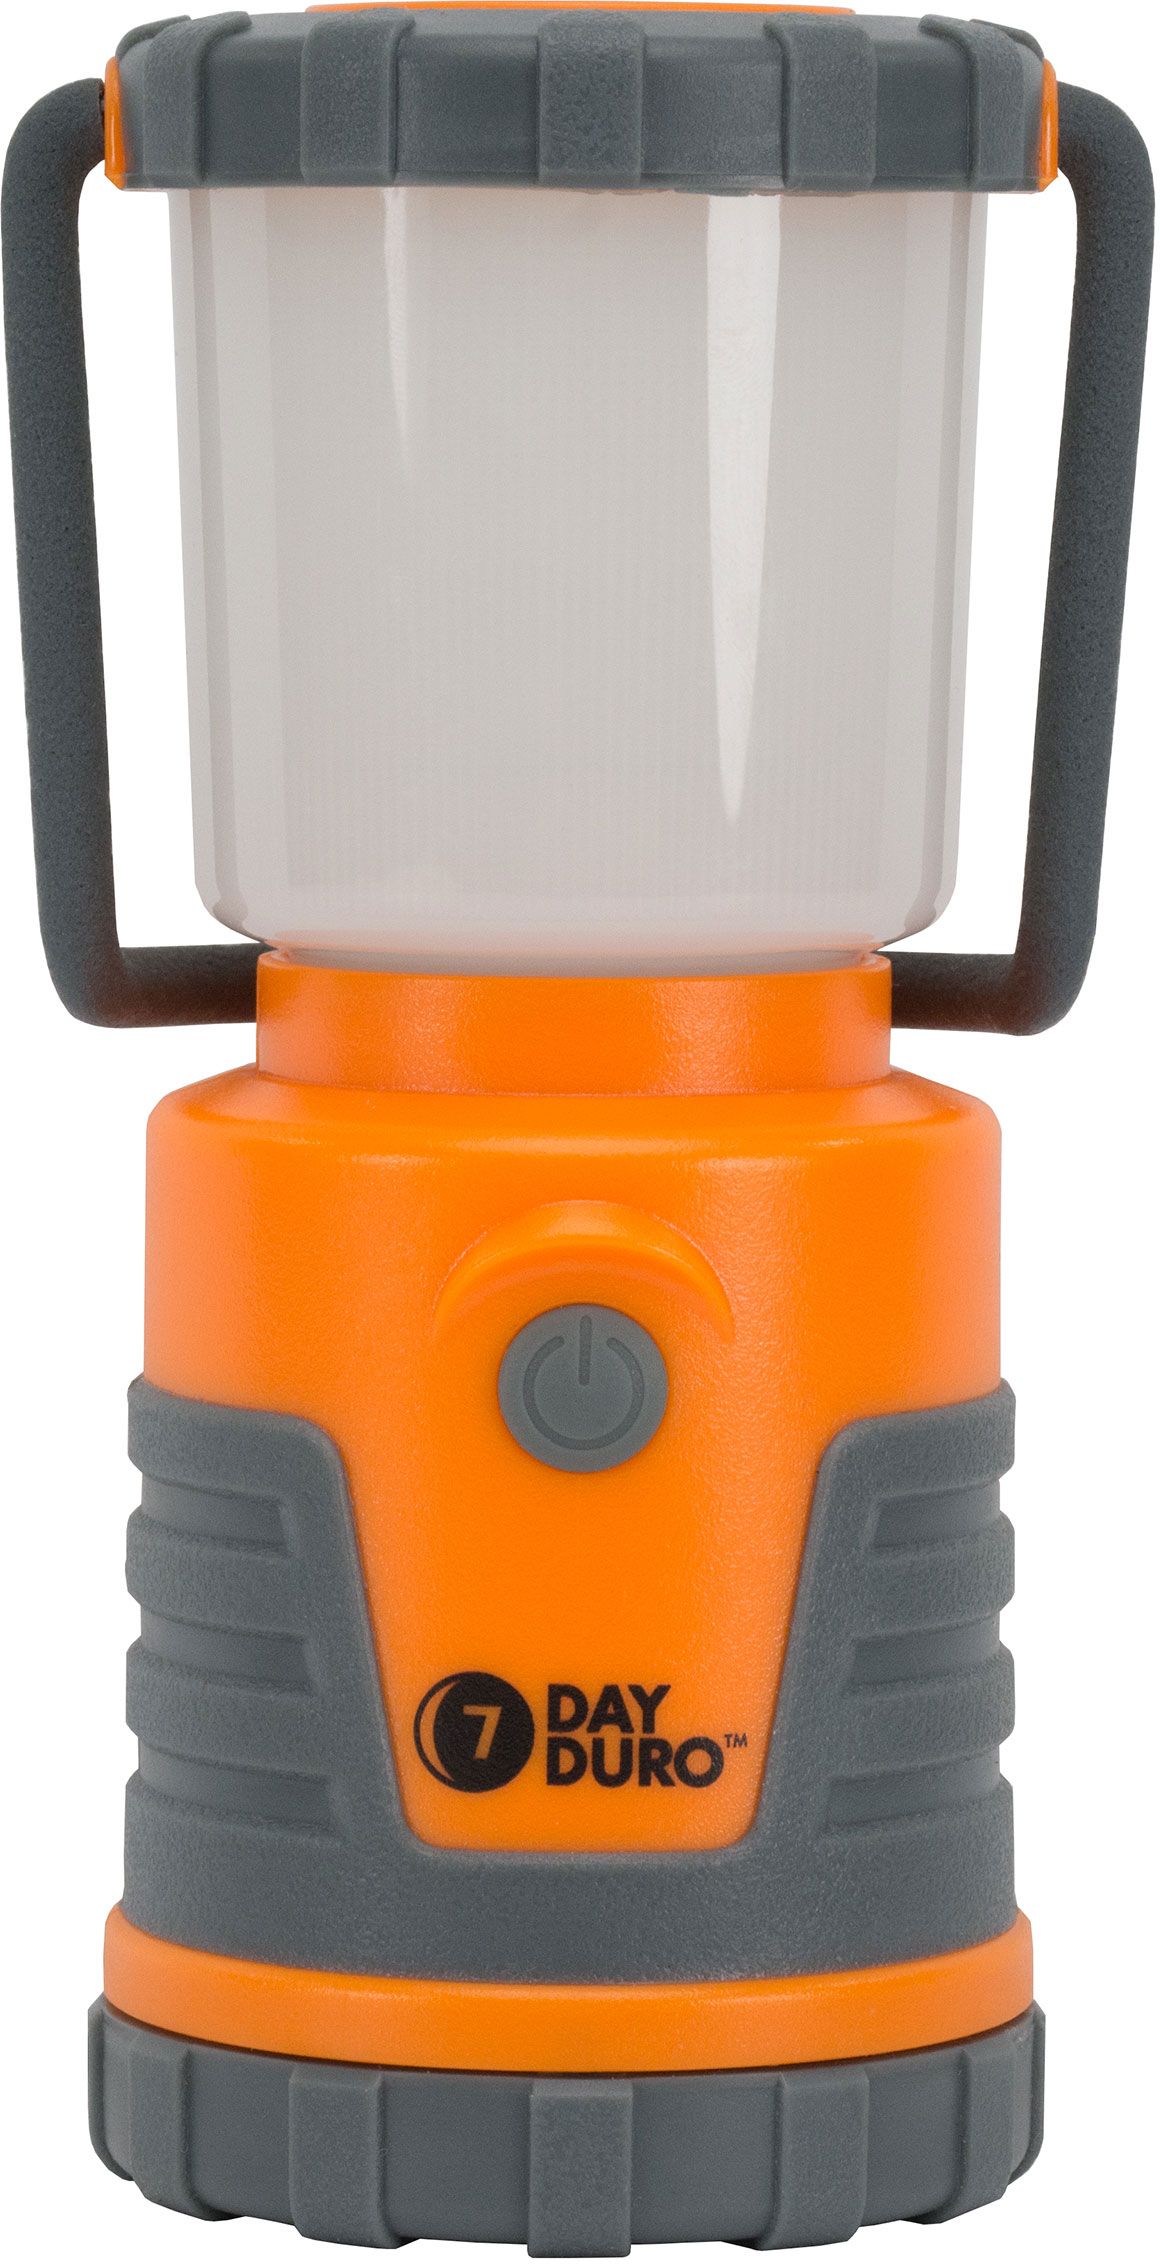 Orange UST 7-Day Duro LED Lantern